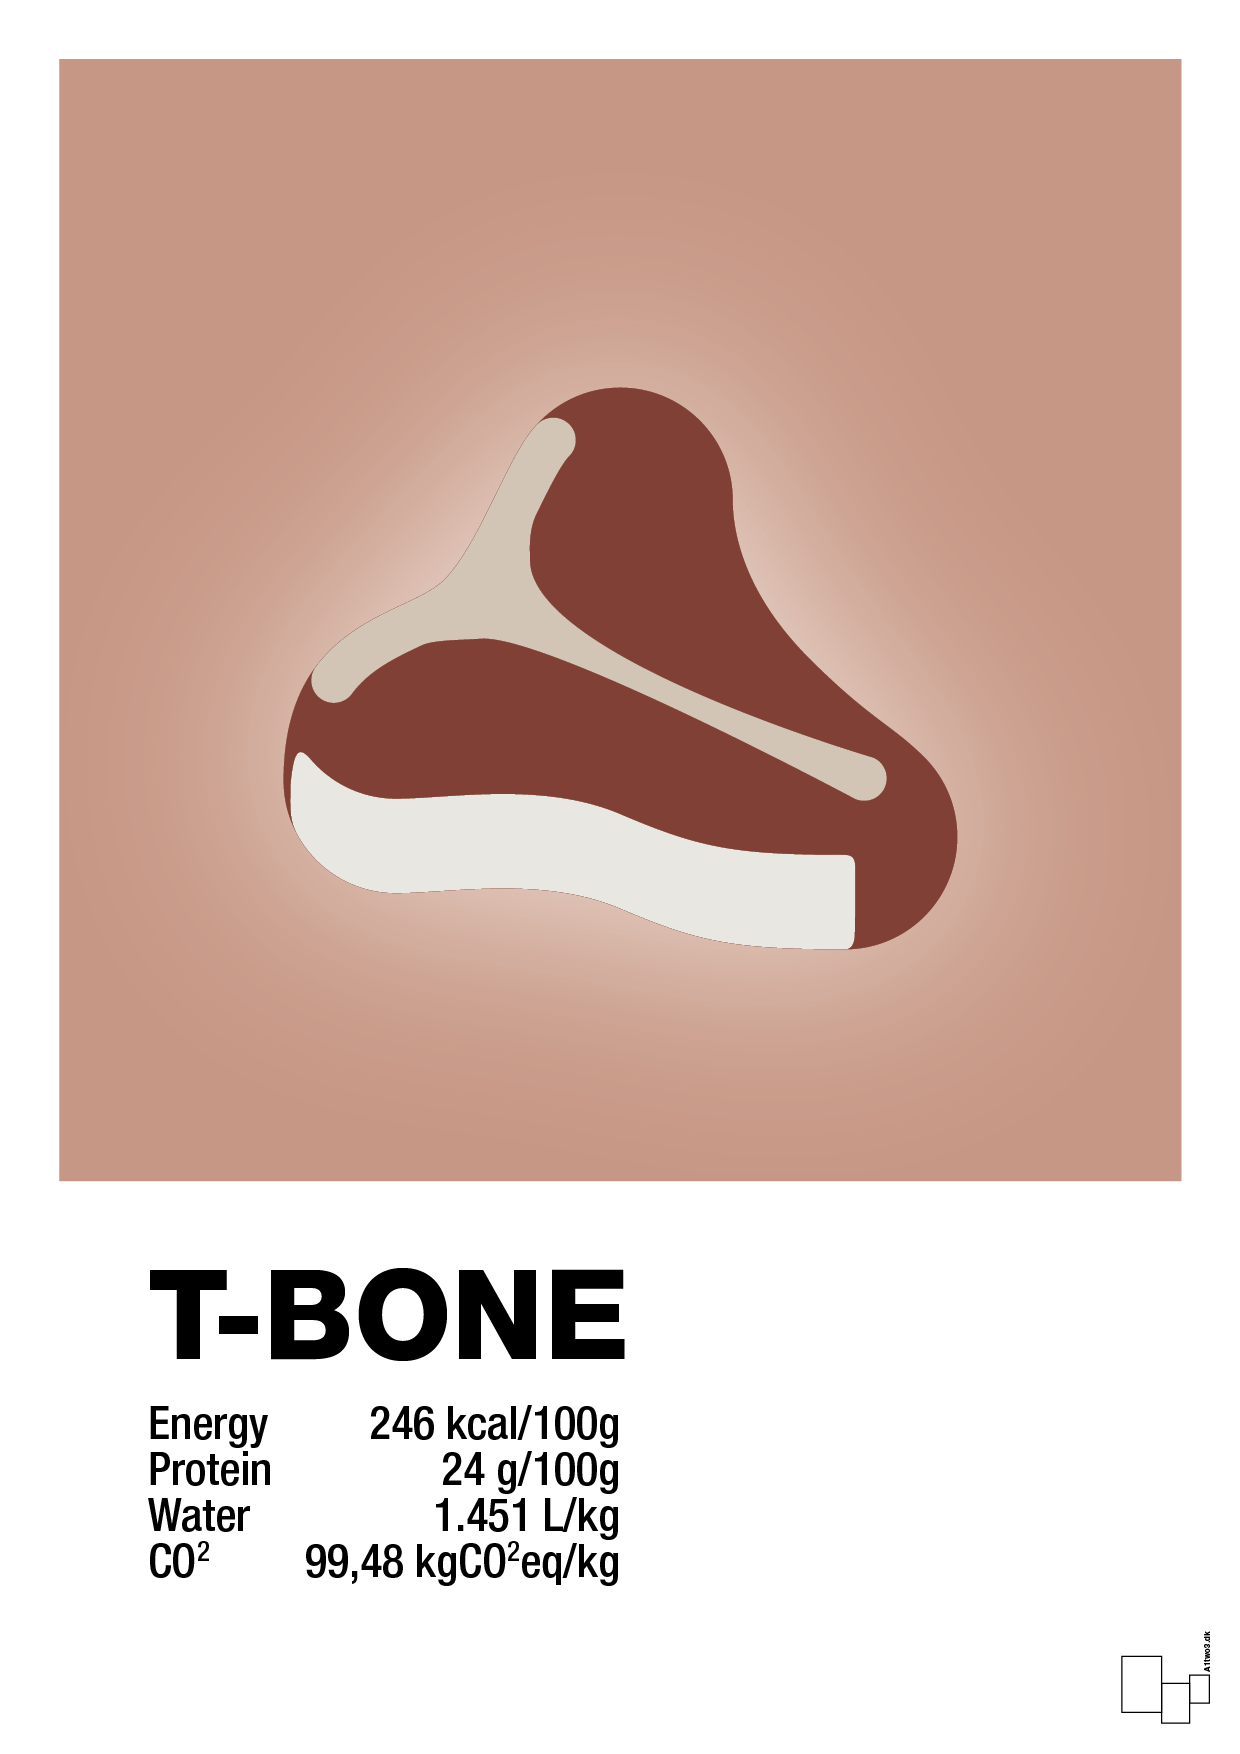 t-bone nutrition og miljø - Plakat med Mad & Drikke i Powder